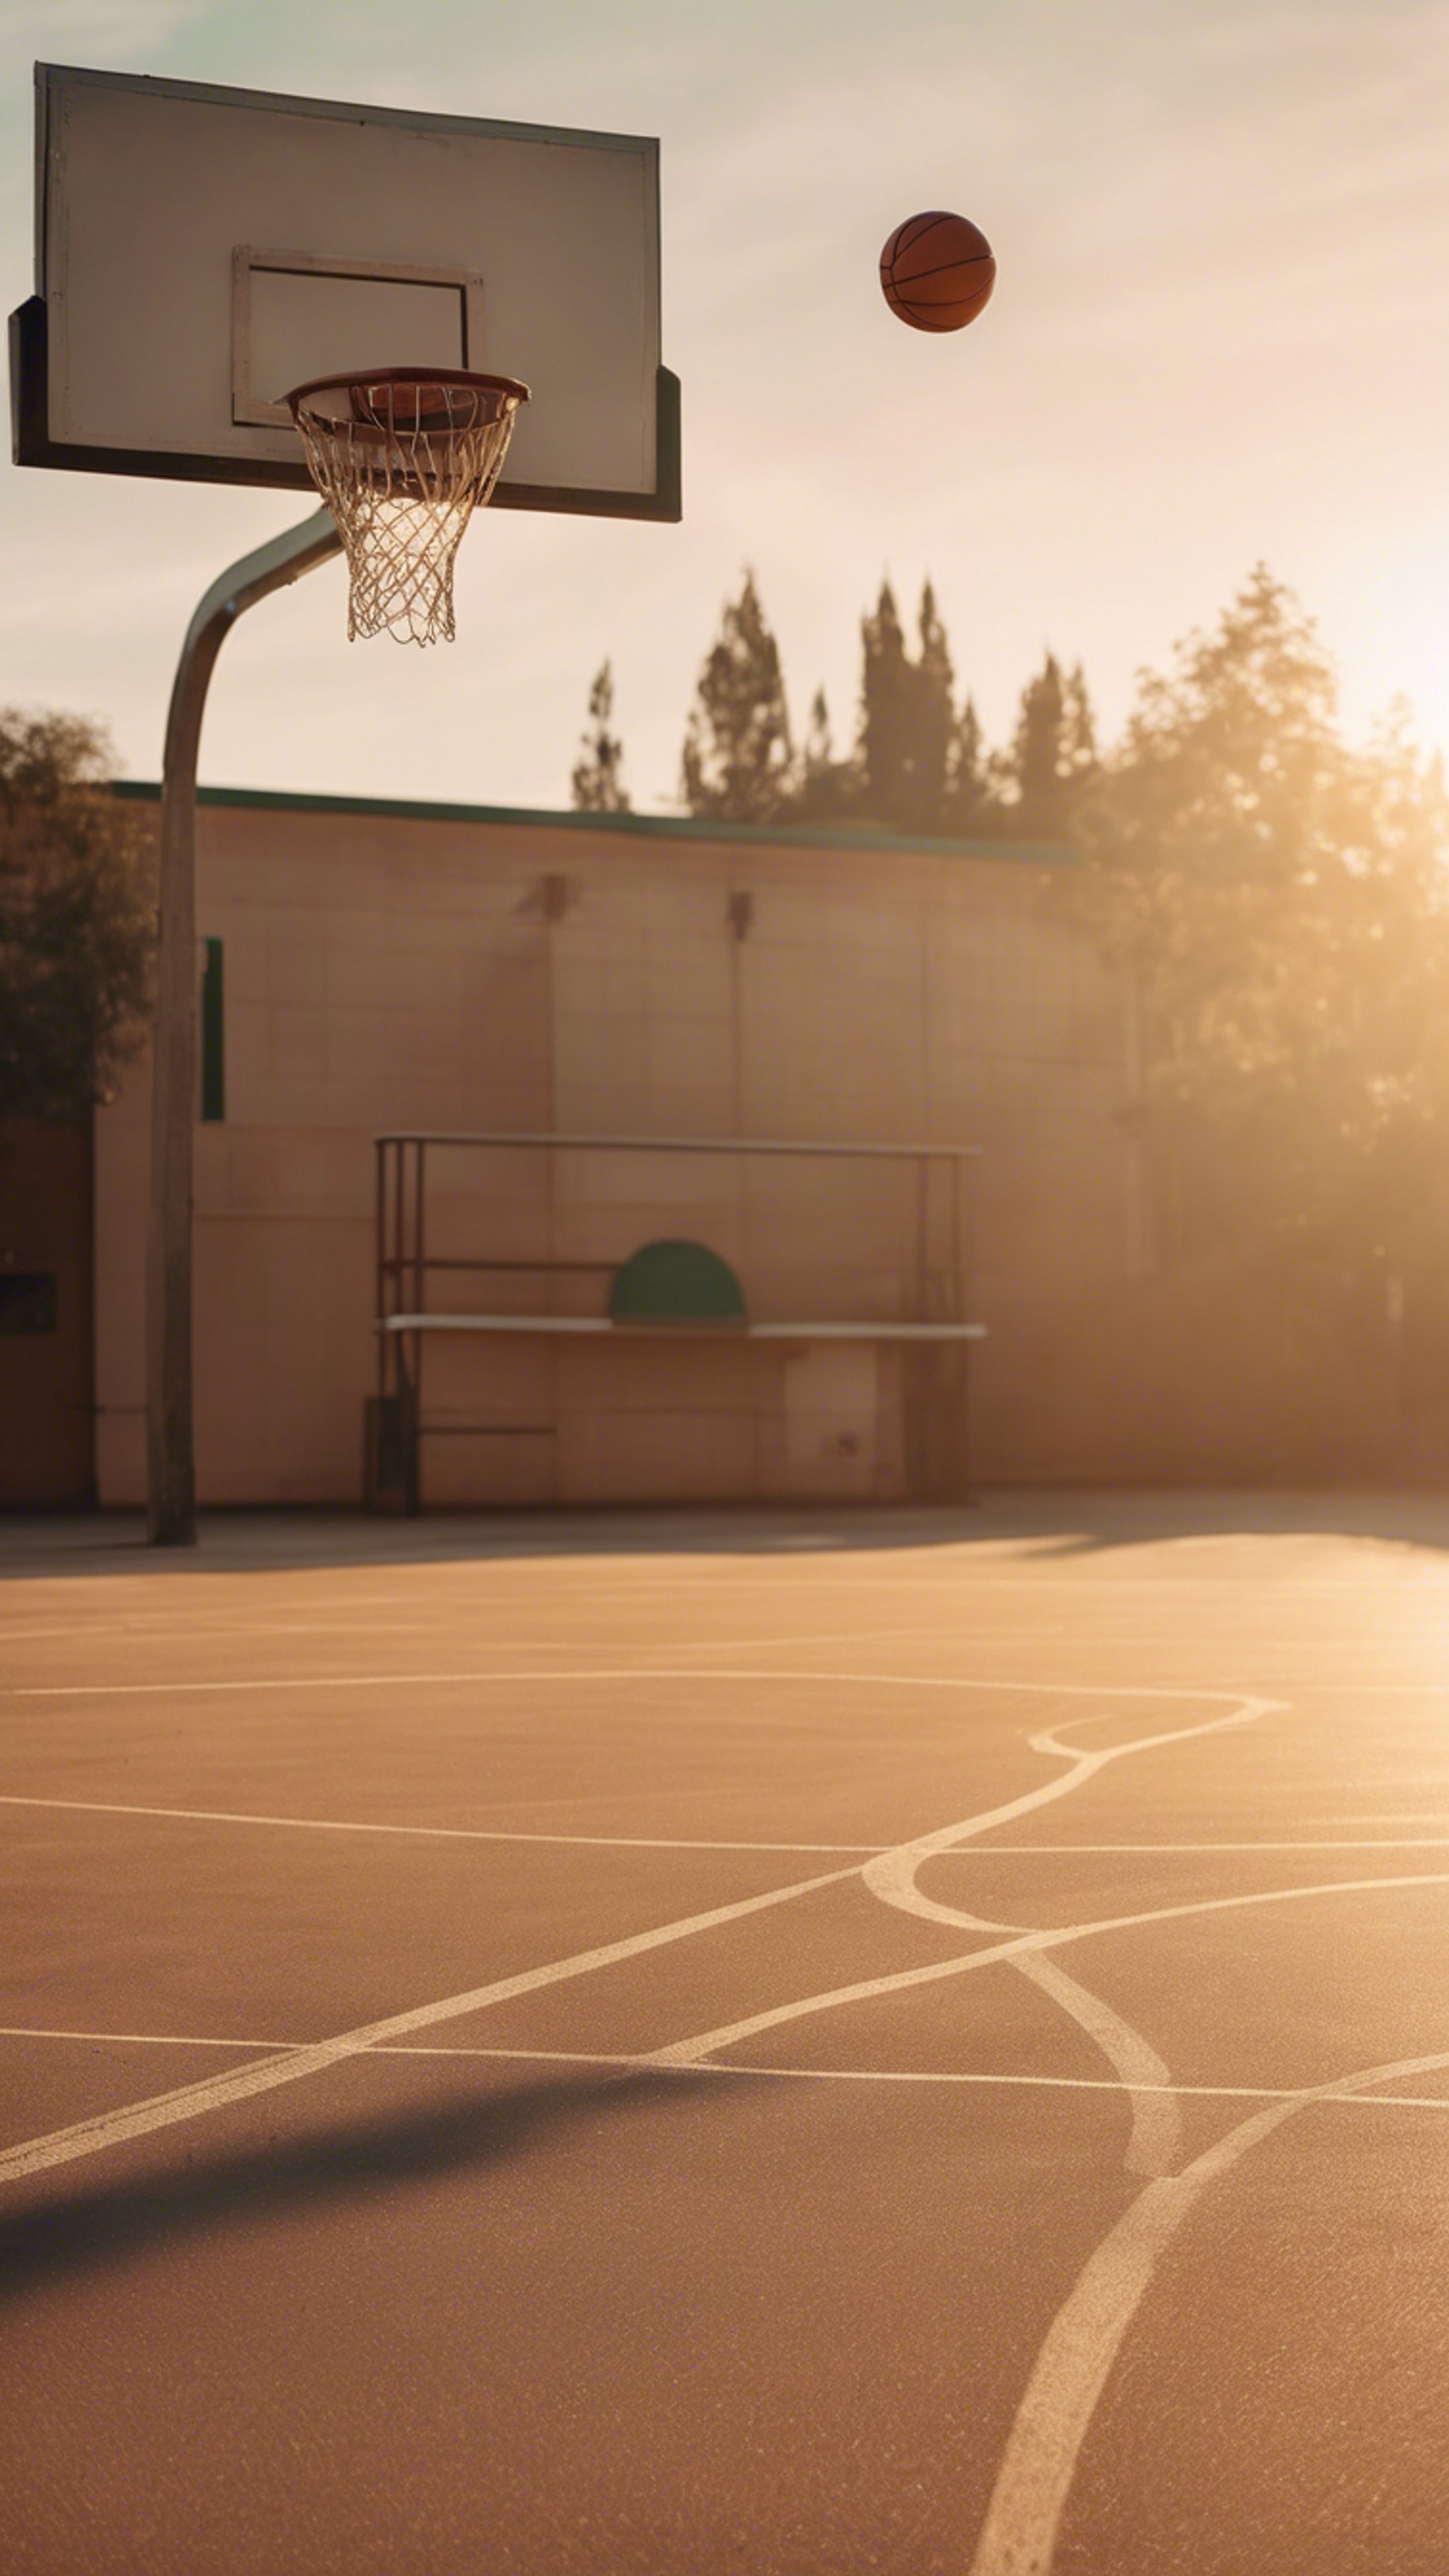 A deserted school’s basketball court in the pacific golden light of sunset. Tapeta na zeď[5d35315ab9de41dcbc38]